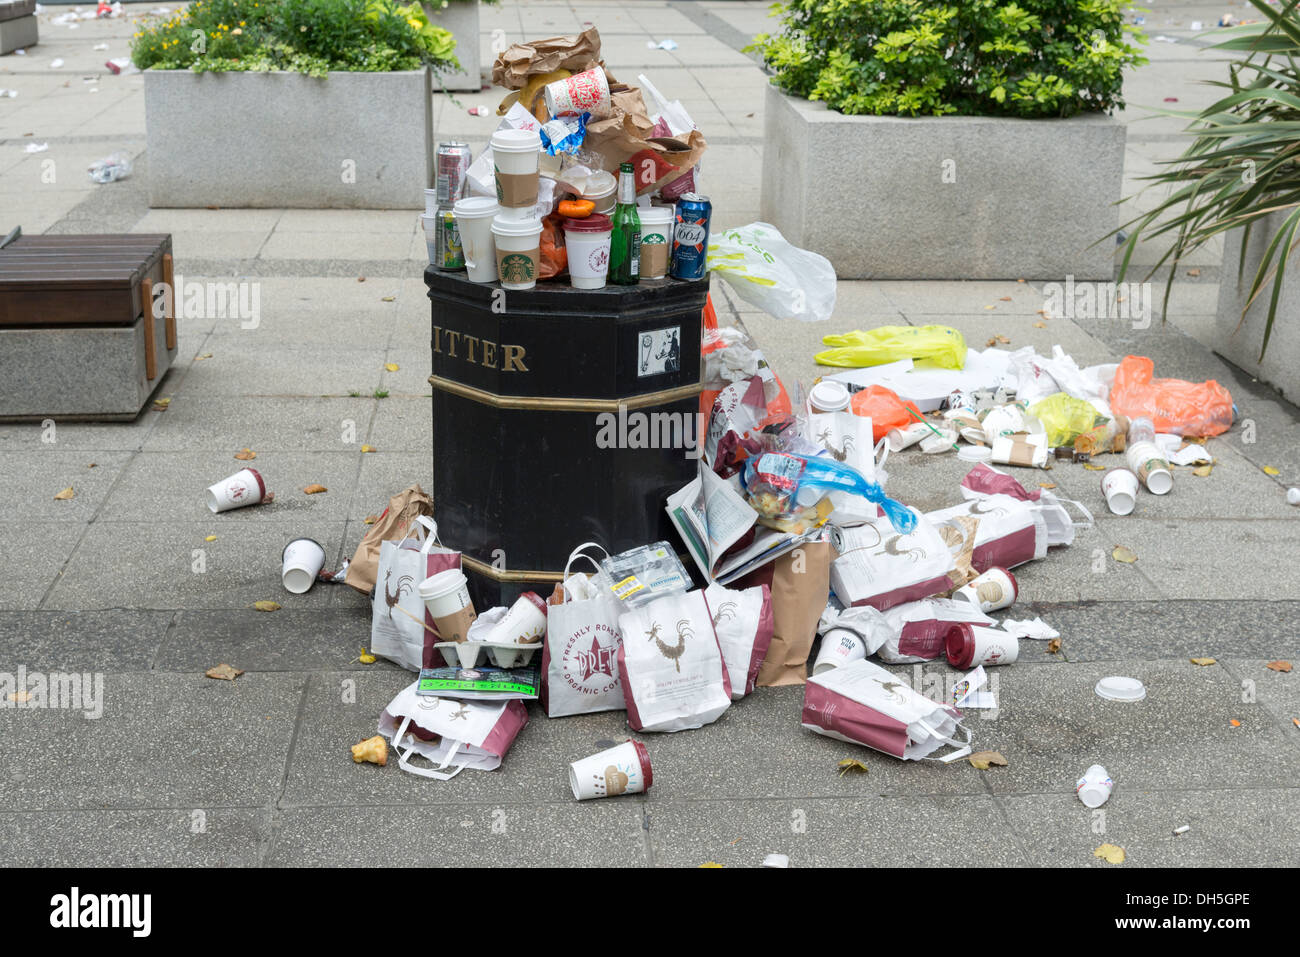 Sacchi da asporto e contenitori per bevande in overflow da lettiera bin, London, England, Regno Unito Foto Stock